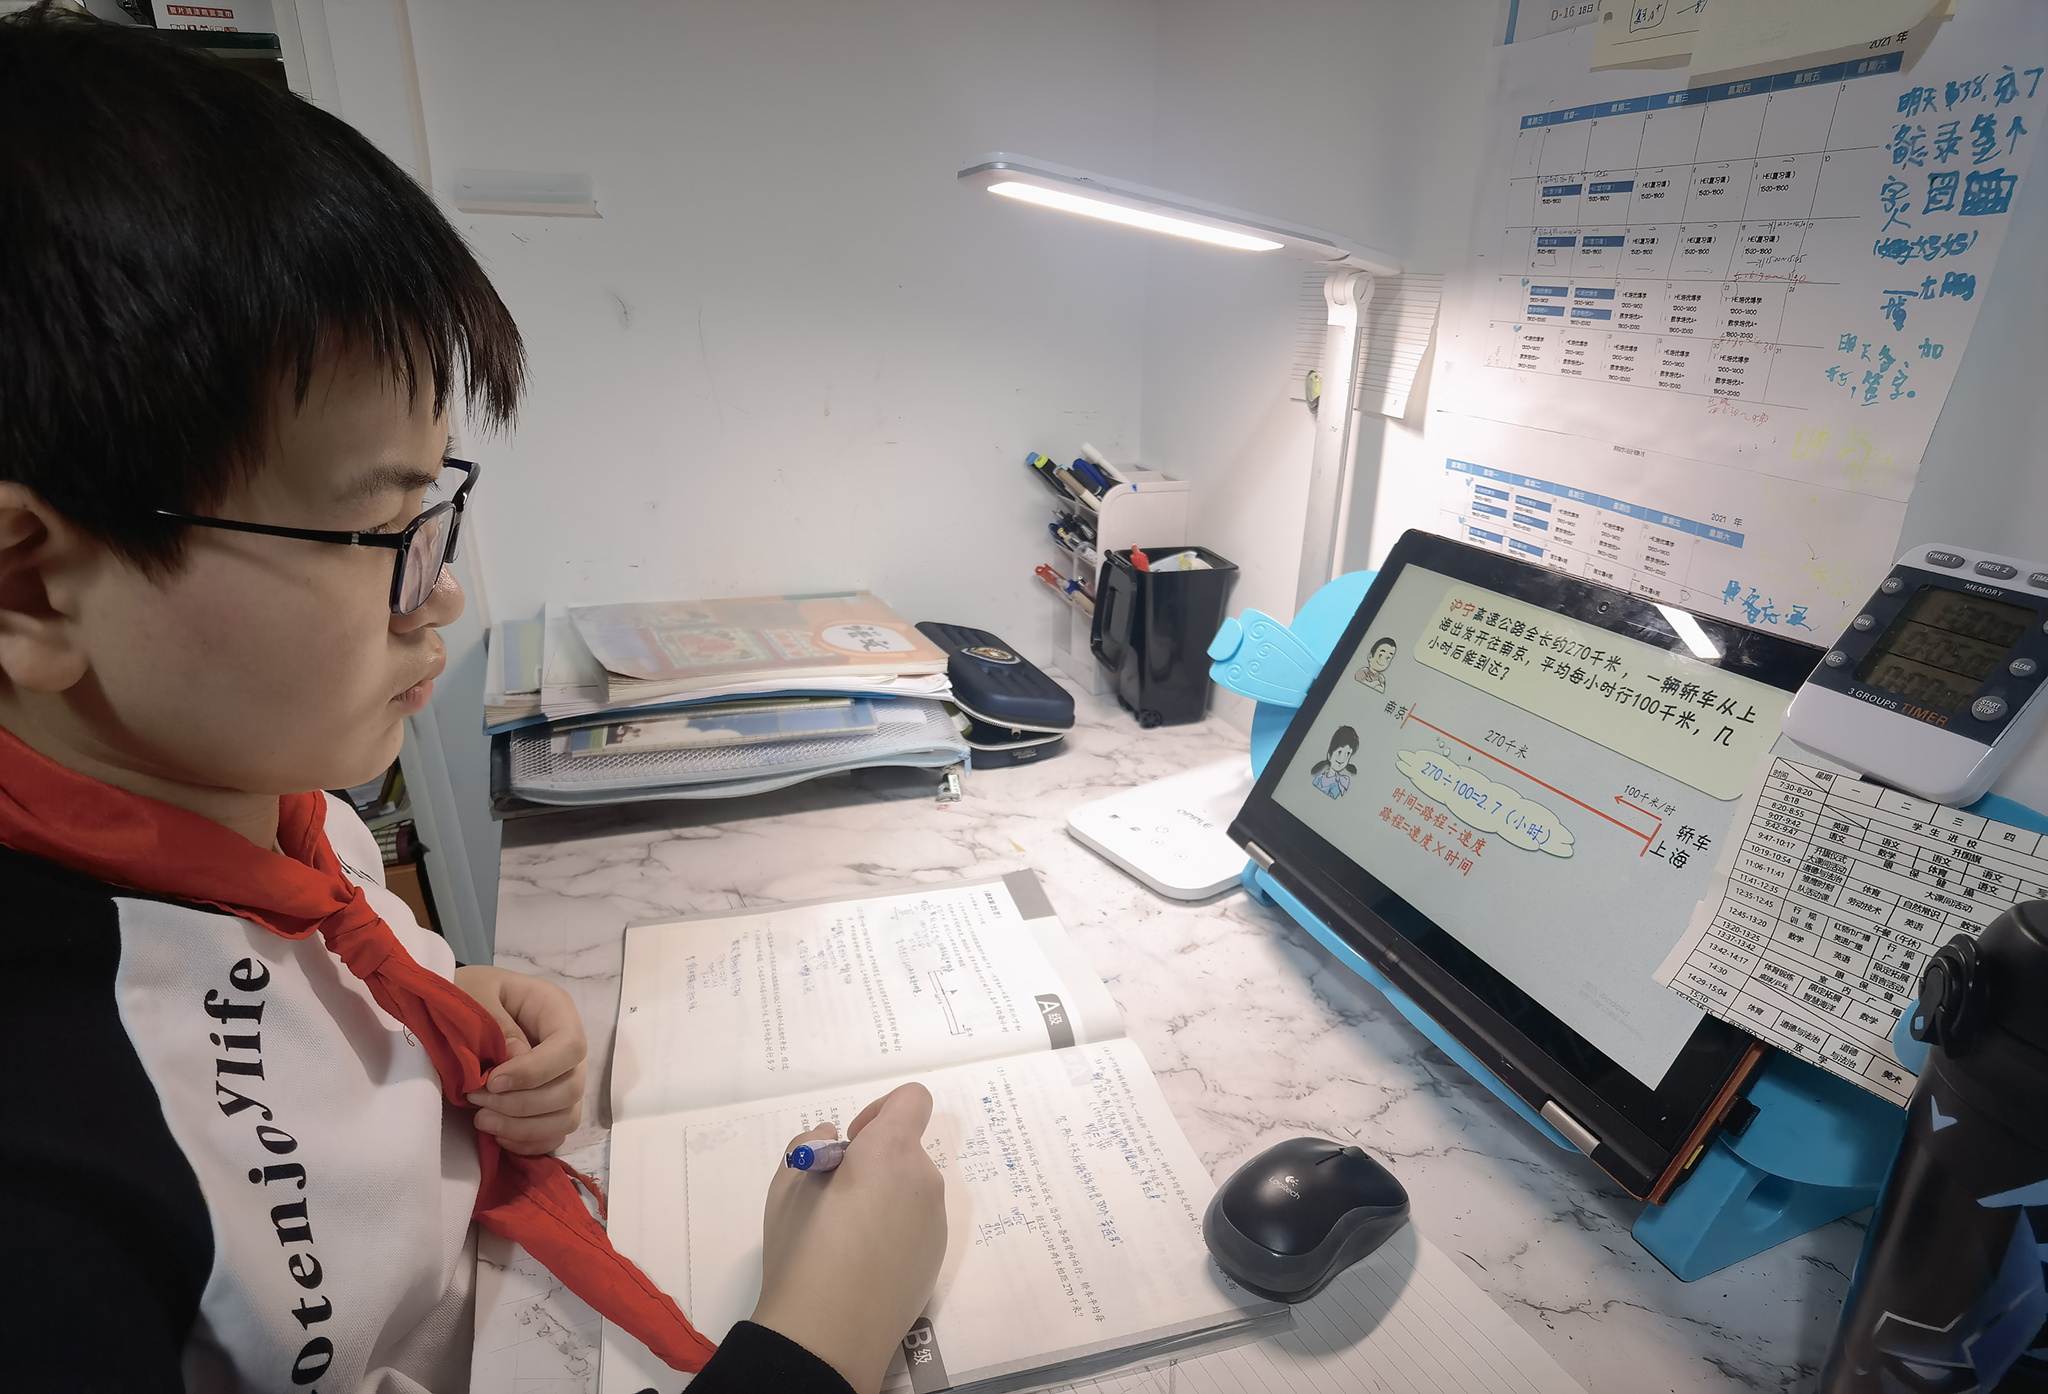 上海市静安区闸北第一中心小学为消除家长对学生在无监管状态下使用智能手机、平板电脑的顾虑，专门编写《智能手机、平板“儿童模式”使用指南》。图为该校学生正在进行在线学习。.jpg